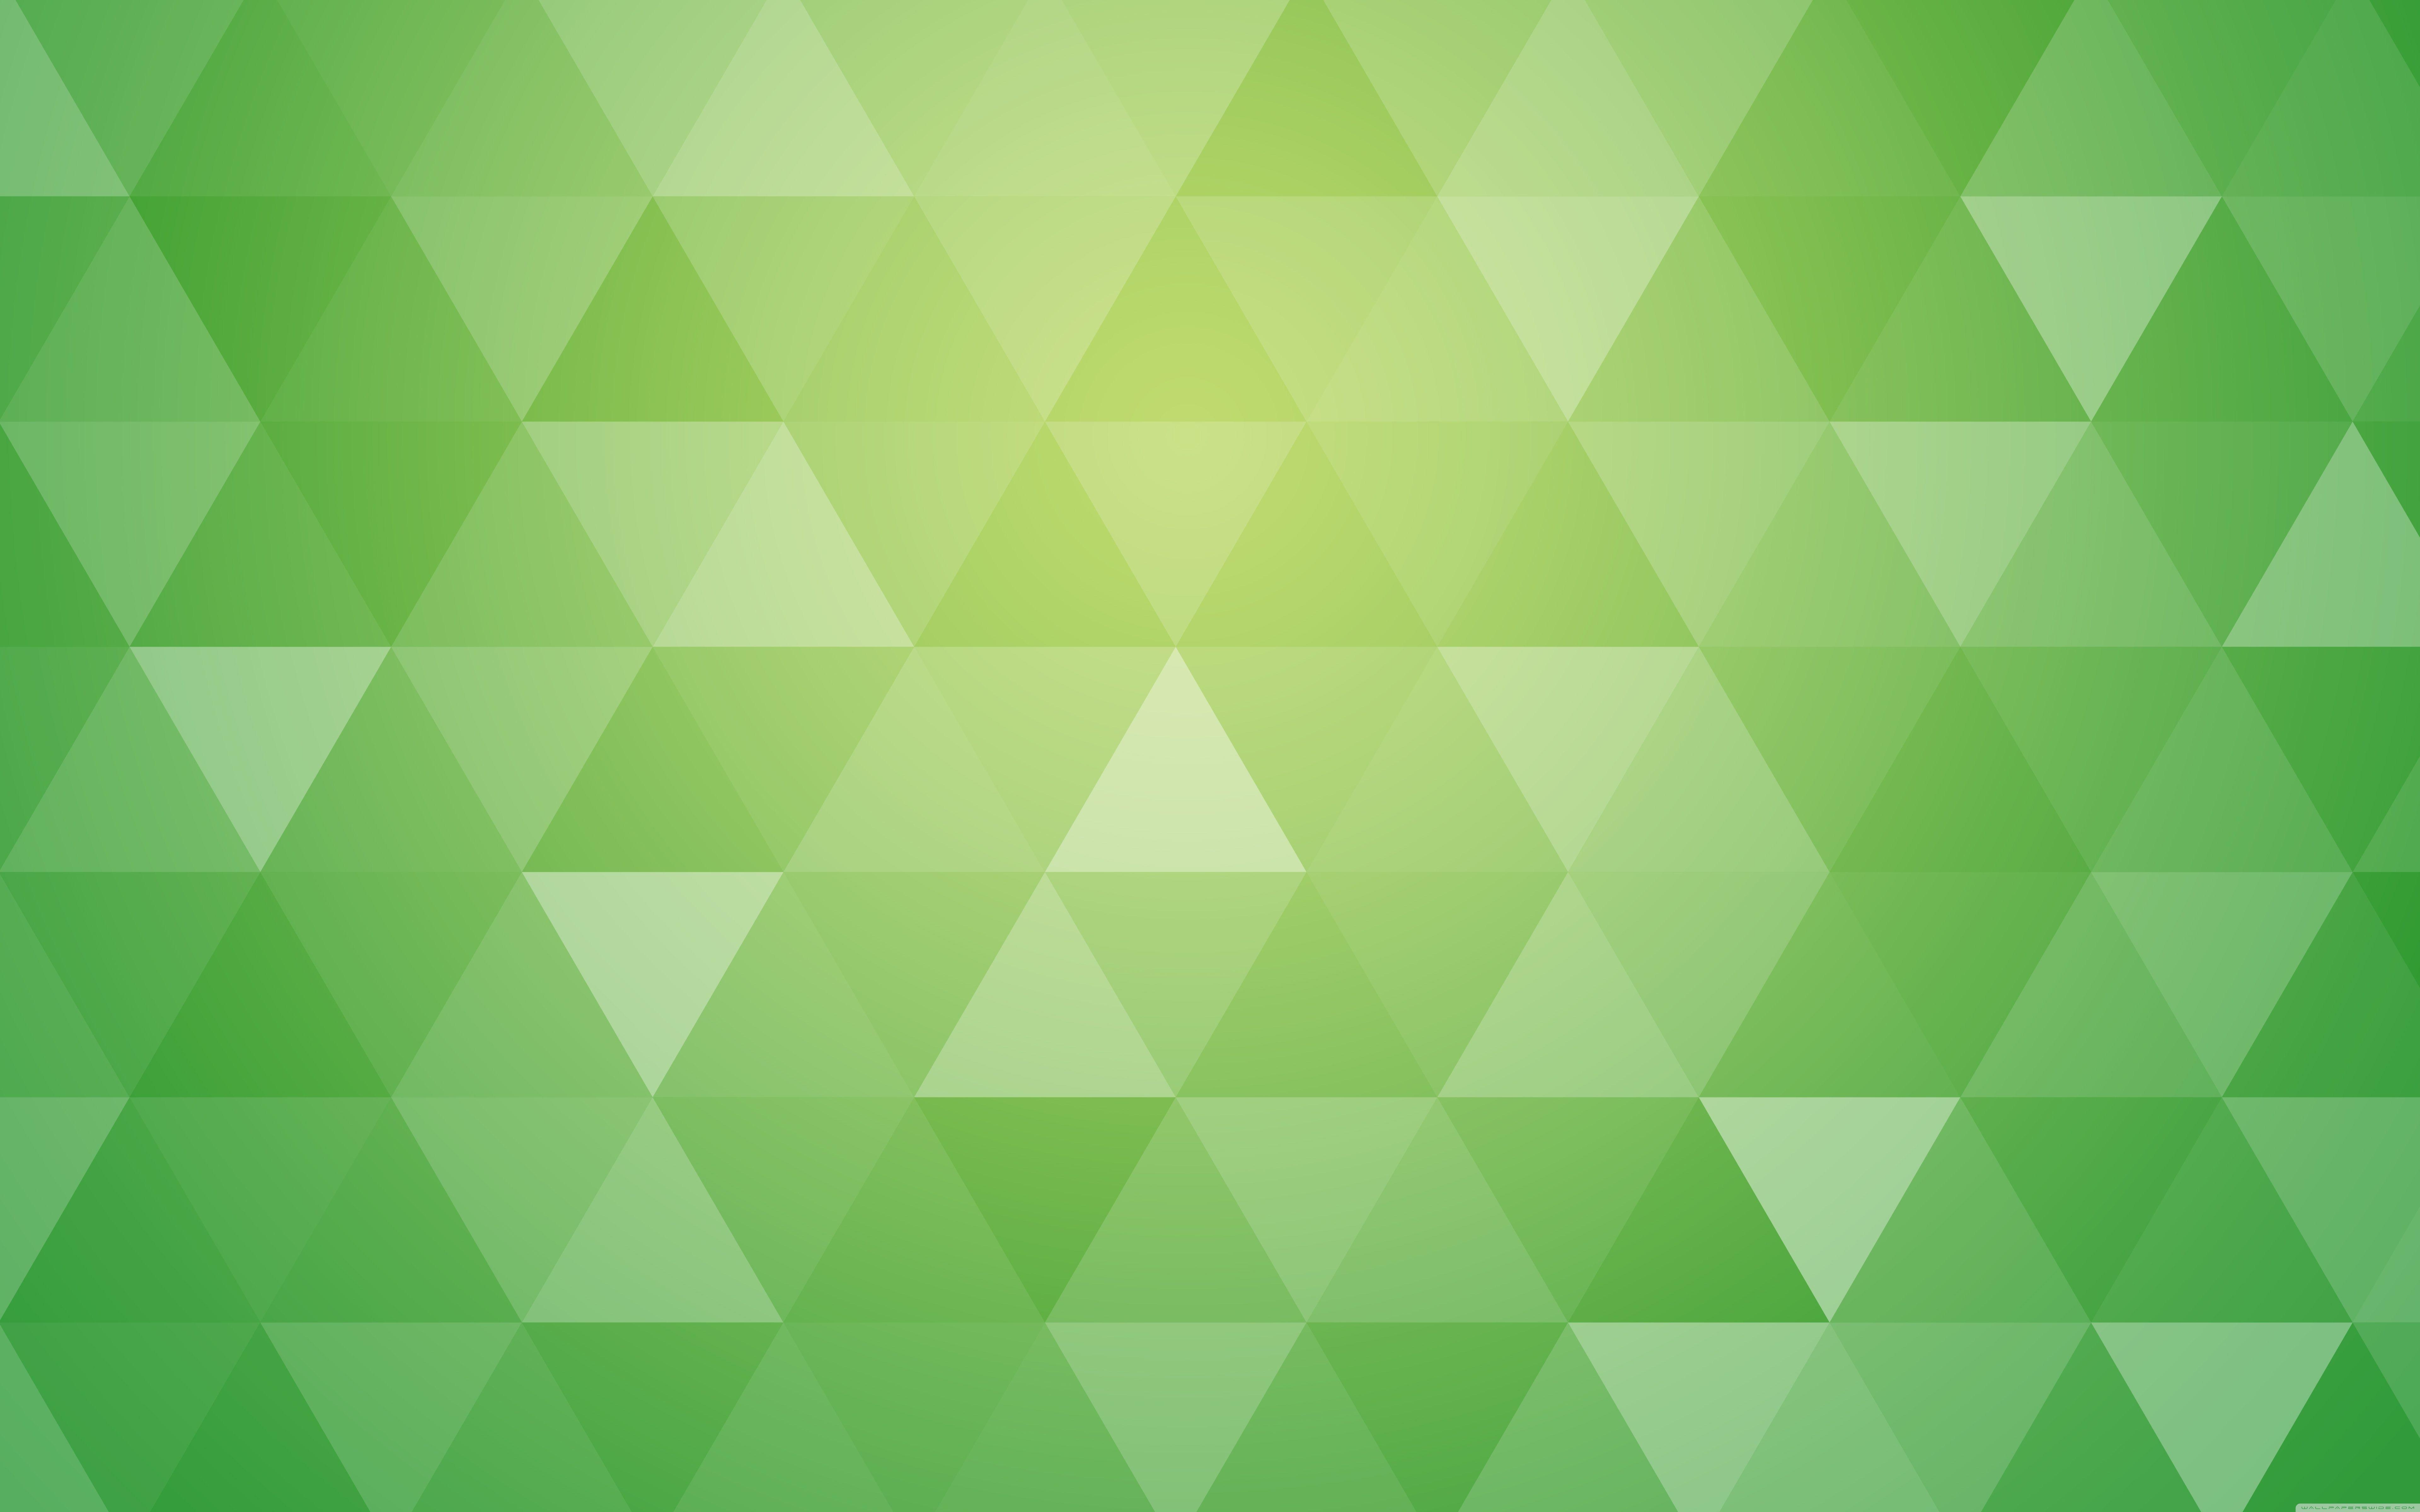 Bộ sưu tập hình ảnh khối học với gam màu xanh lá đẹp tuyệt vời. Những hình khối học giống như một trò chơi mà bạn sẽ không bao giờ chán. Click để xem toàn bộ bộ sưu tập hình nền khối học xanh lá mát mẻ này.